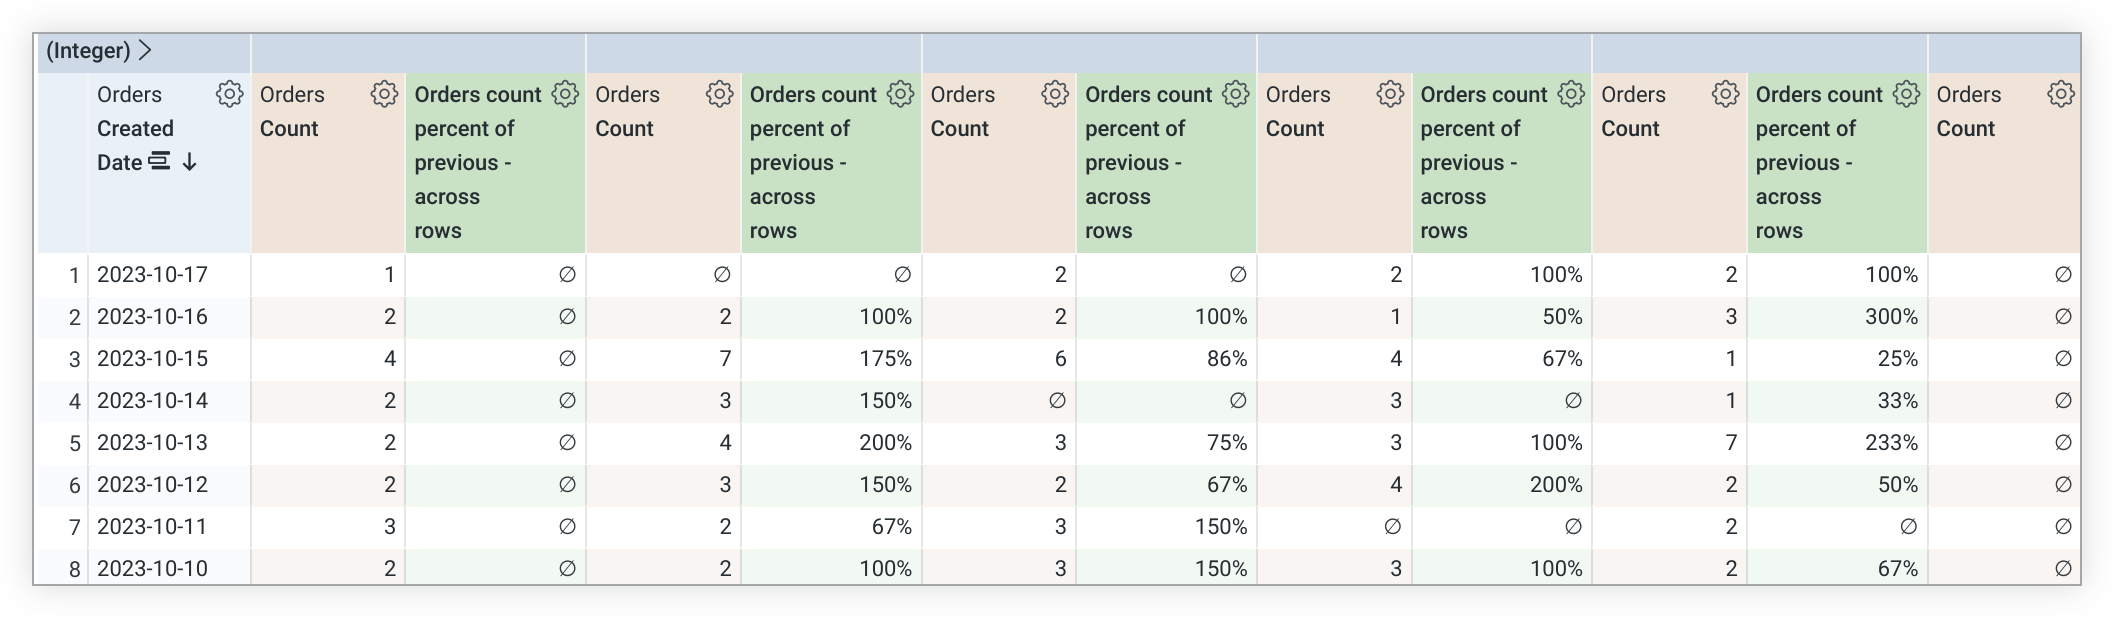 Explora la tabla de datos que muestra una nueva columna dinámica para el porcentaje de Recuento de pedidos del cálculo anterior de la tabla entre filas.